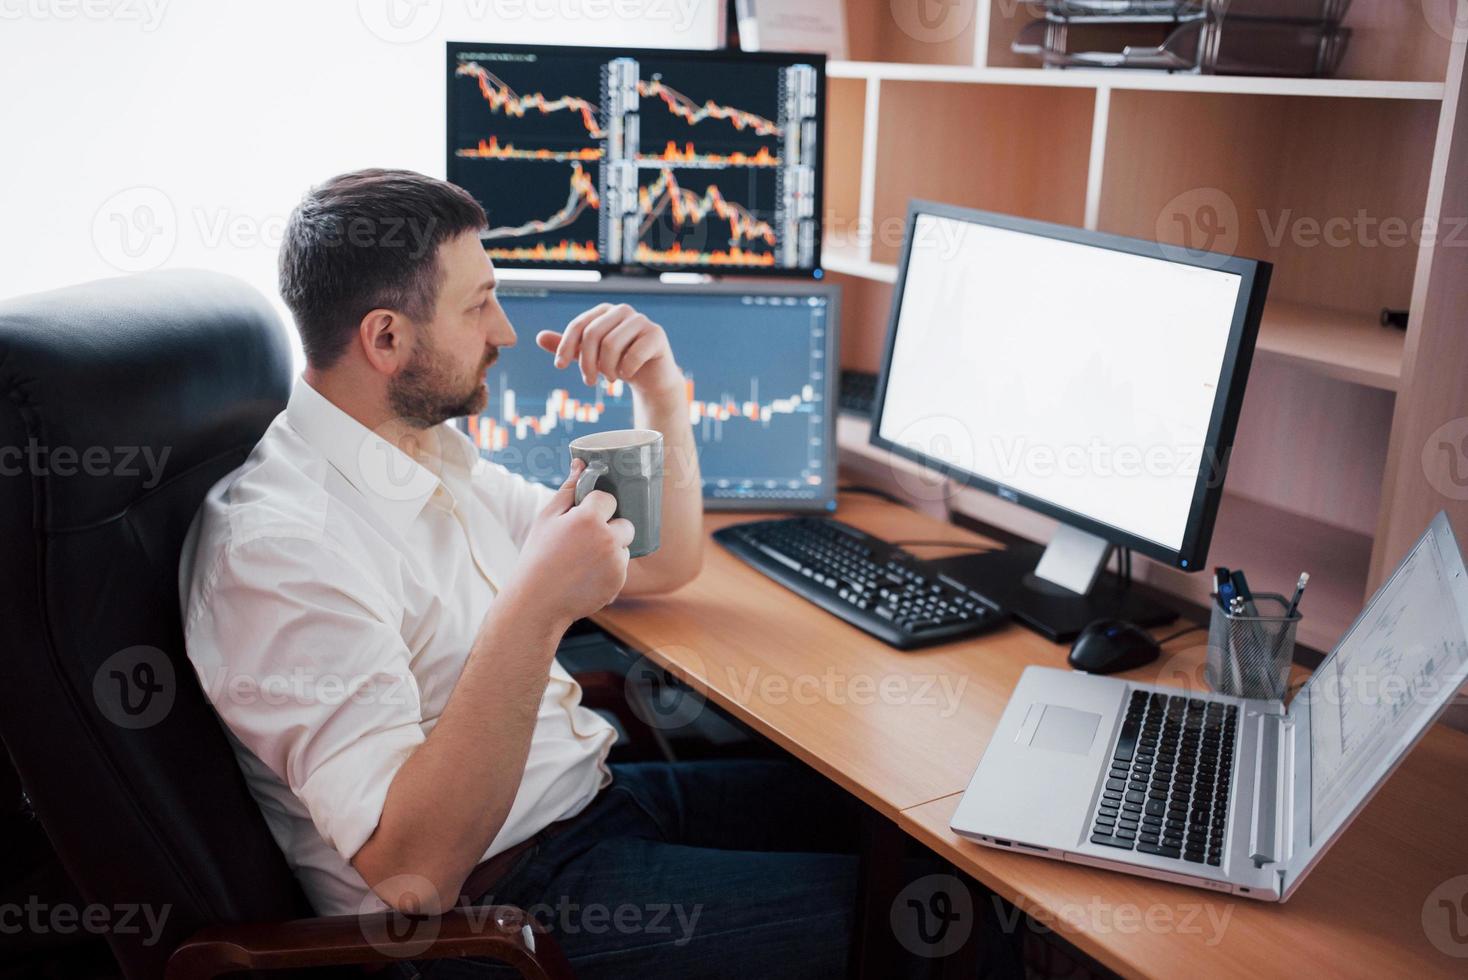 Der junge Geschäftsmann sitzt im Büro am Tisch und arbeitet am Computer mit vielen Monitoren, Diagrammen auf dem Monitor. Börsenmakler analysiert Diagramme für binäre Optionen. Hipster-Mann, der Kaffee trinkt, studiert foto